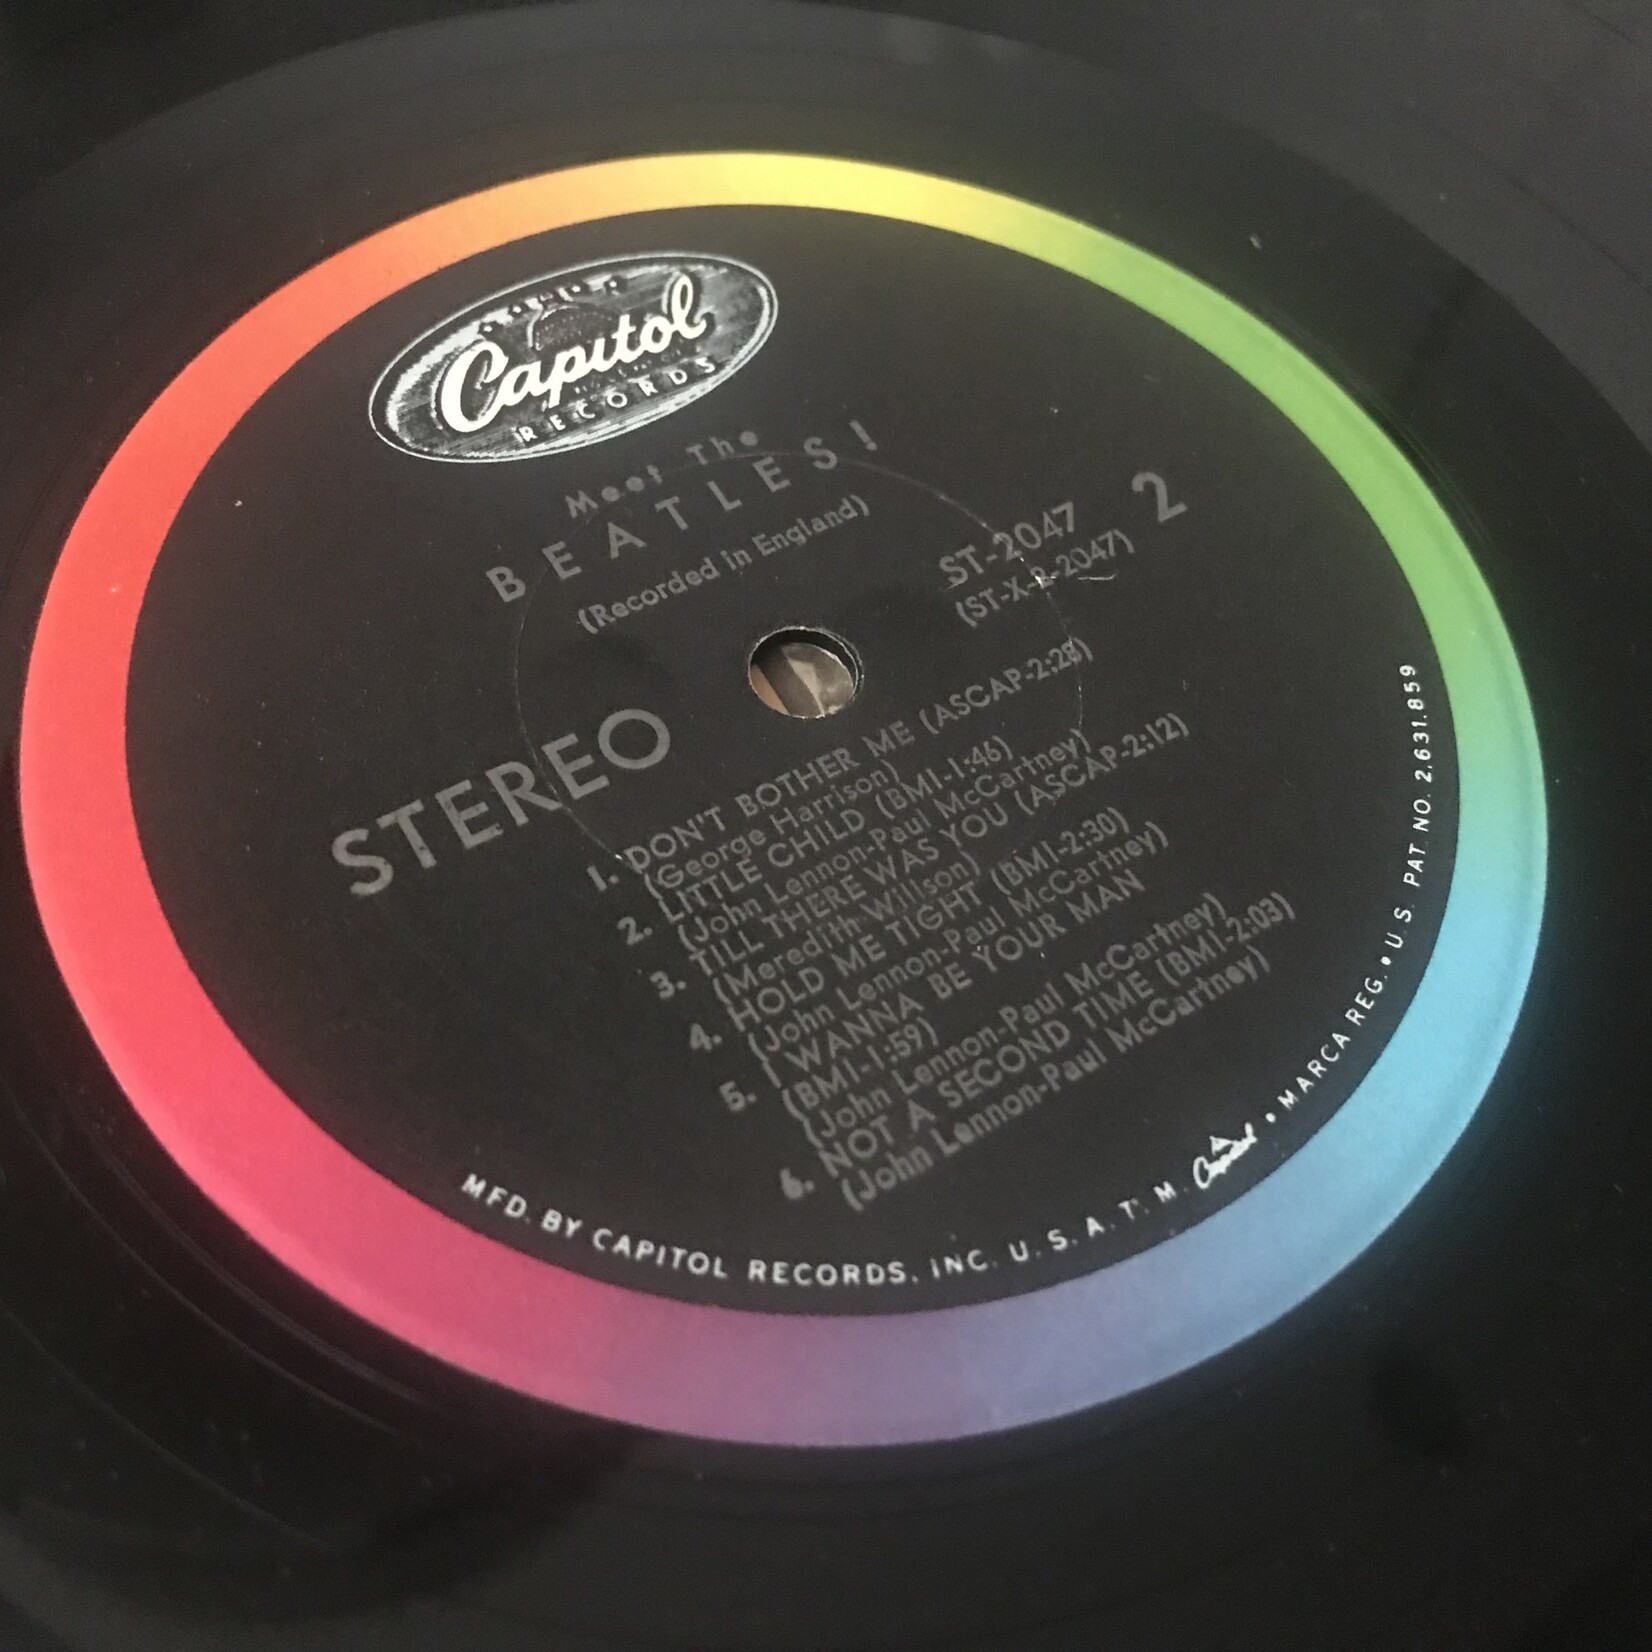 Beatles - Meet the Beatles - ST 2047 - Vinyl LP (USED)